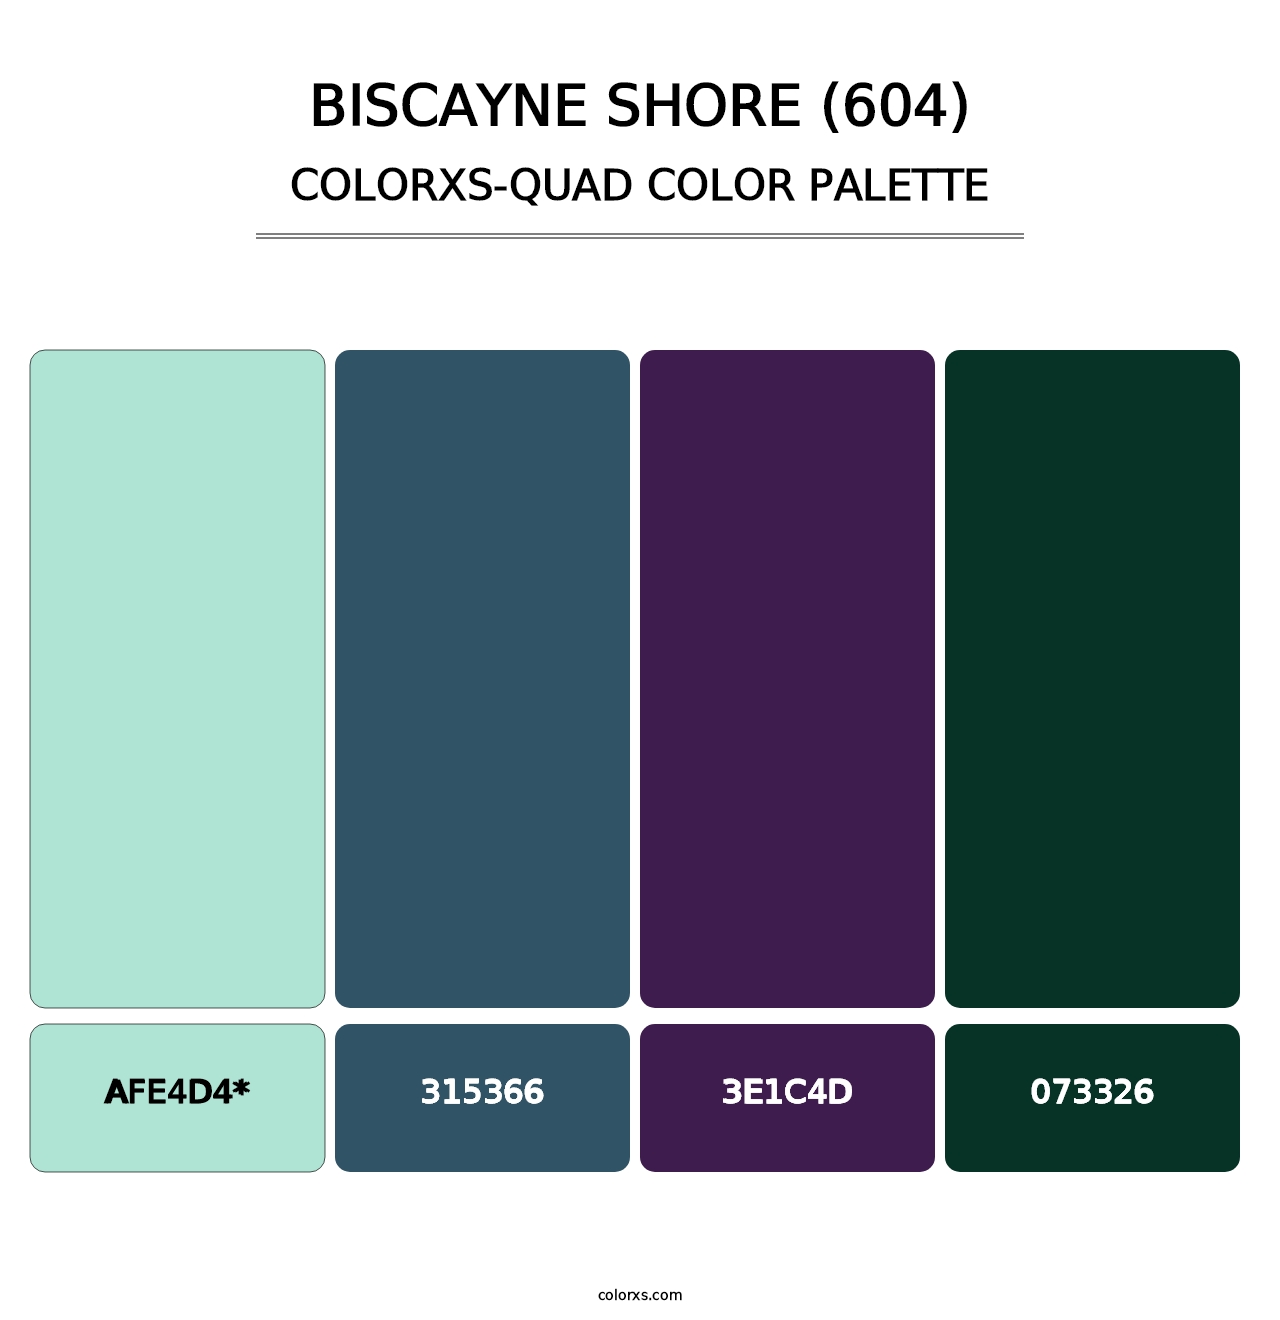 Biscayne Shore (604) - Colorxs Quad Palette